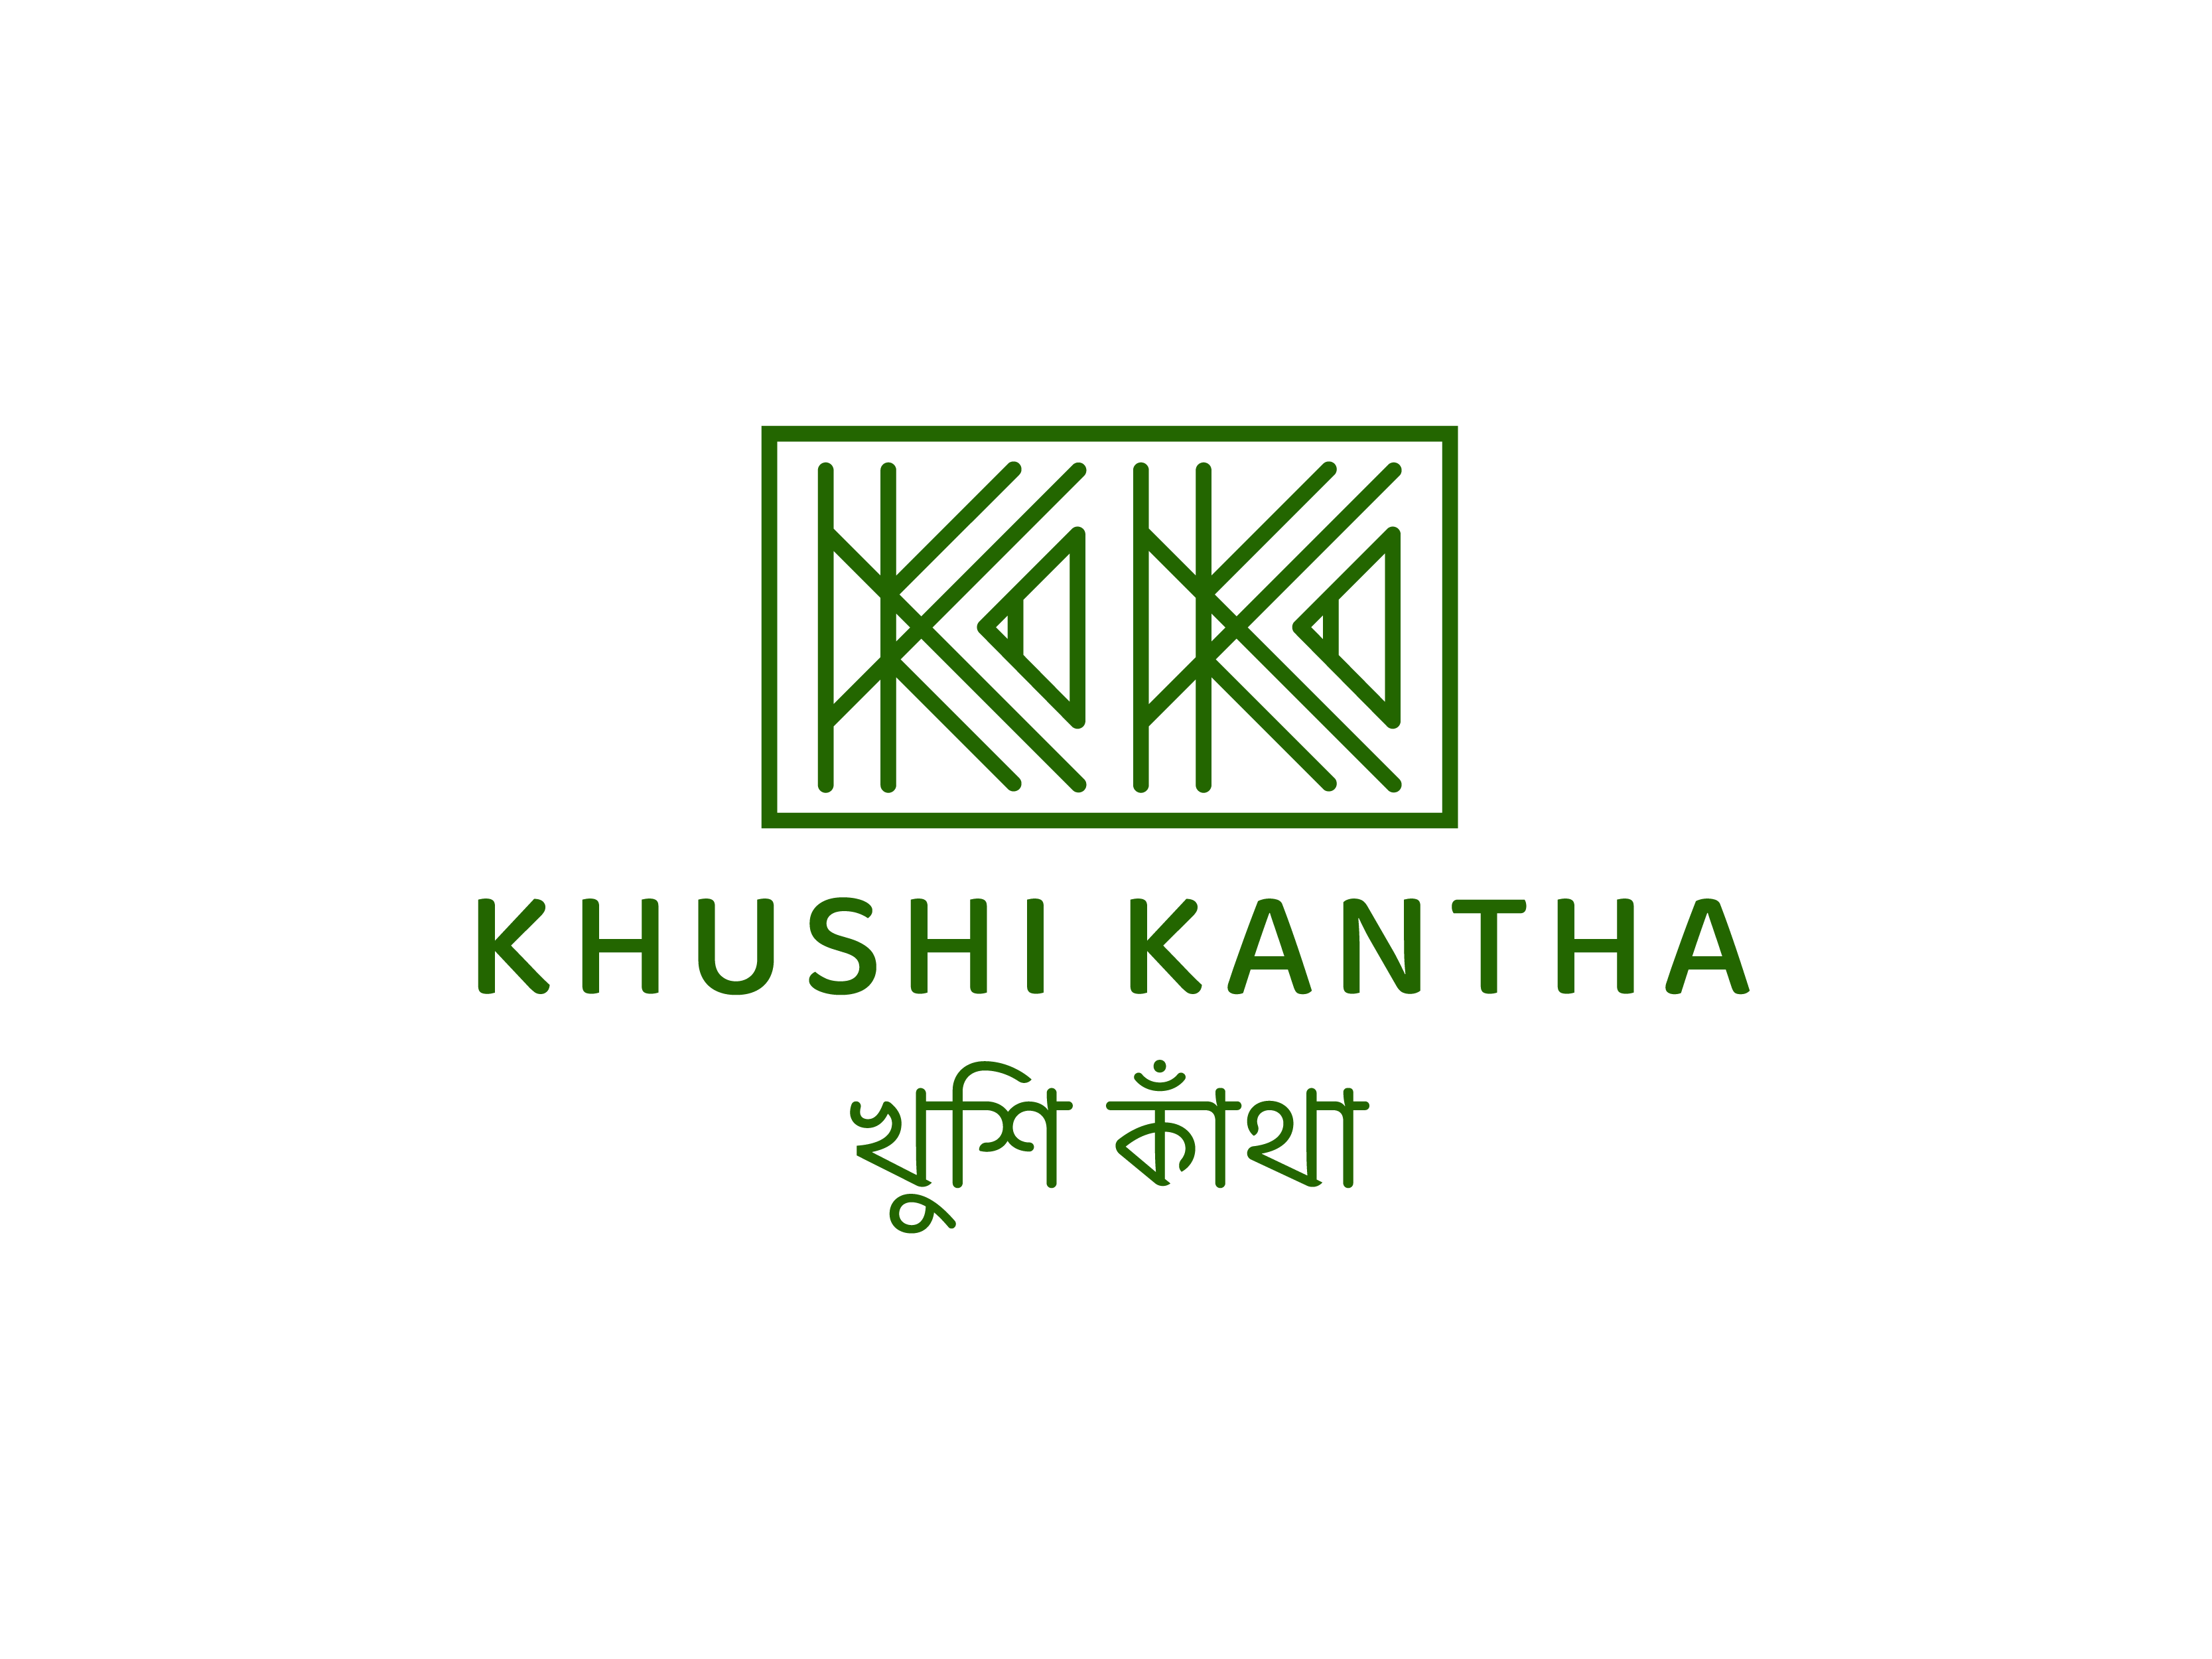 Khushi Kantha